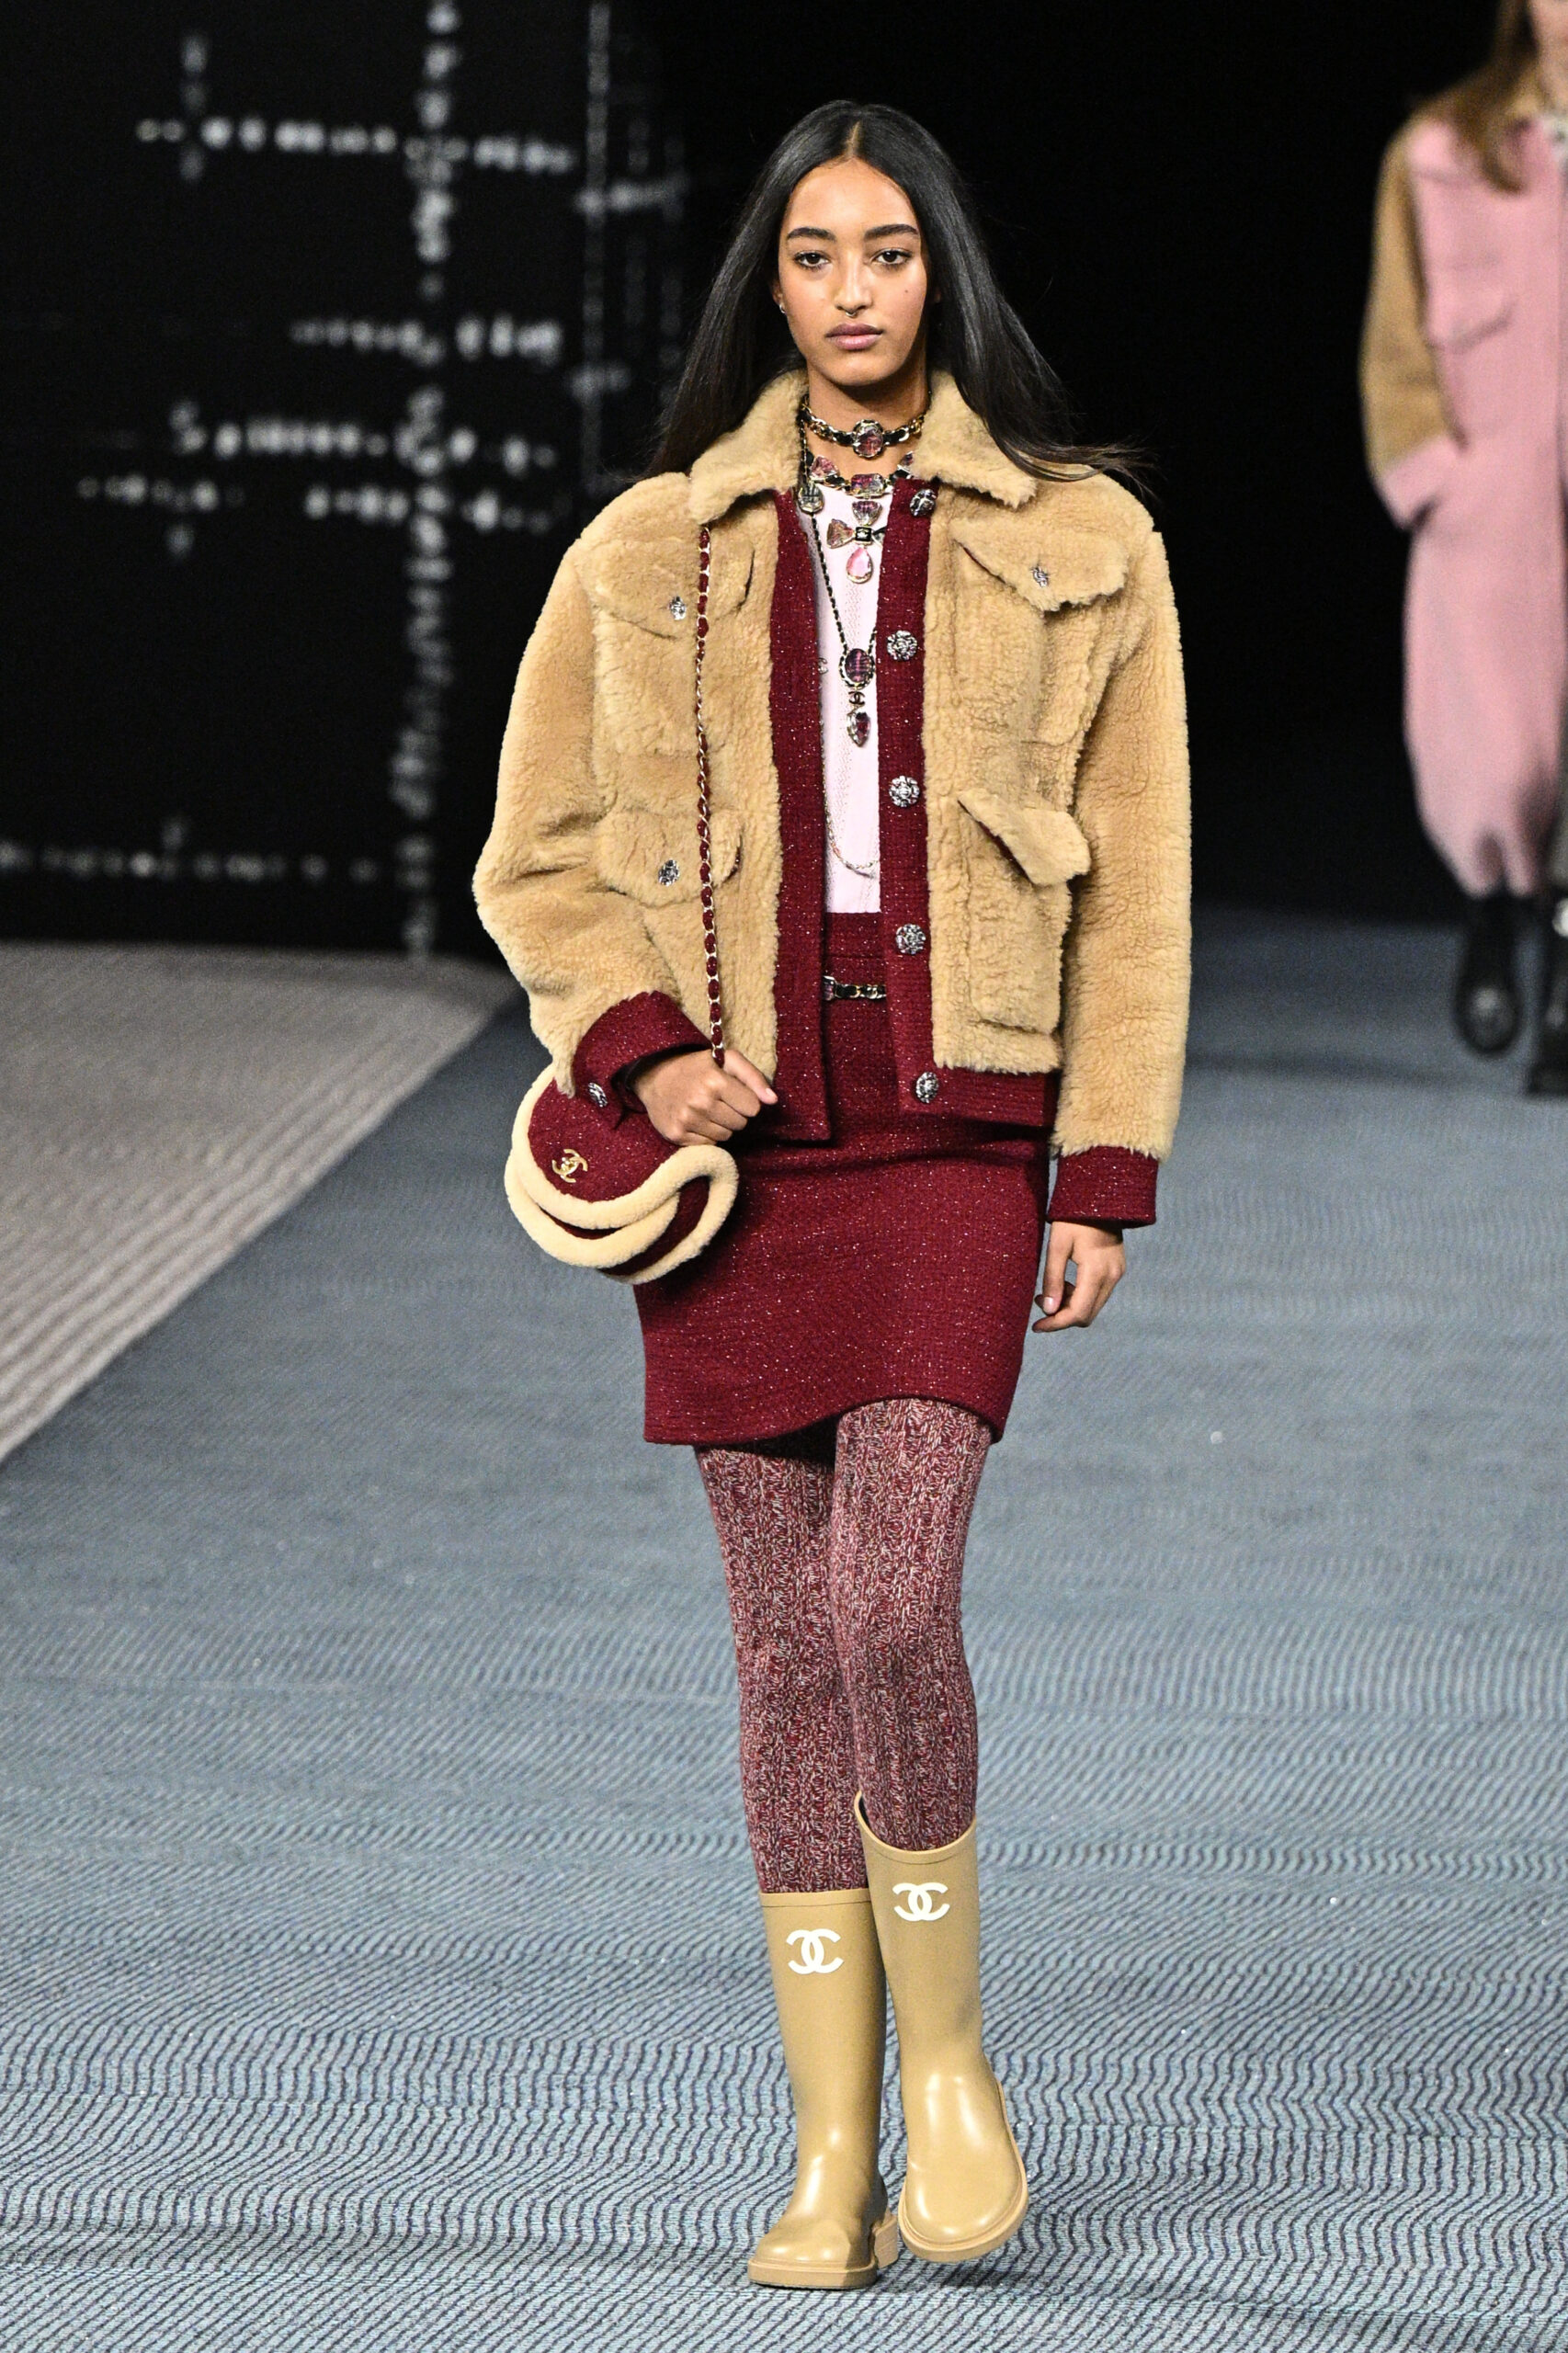 Egy modell szőrmés, sárga kabátban, és egy mustárszínű gumicsizmában sétál a Párizsi Fashion Week kifutóján